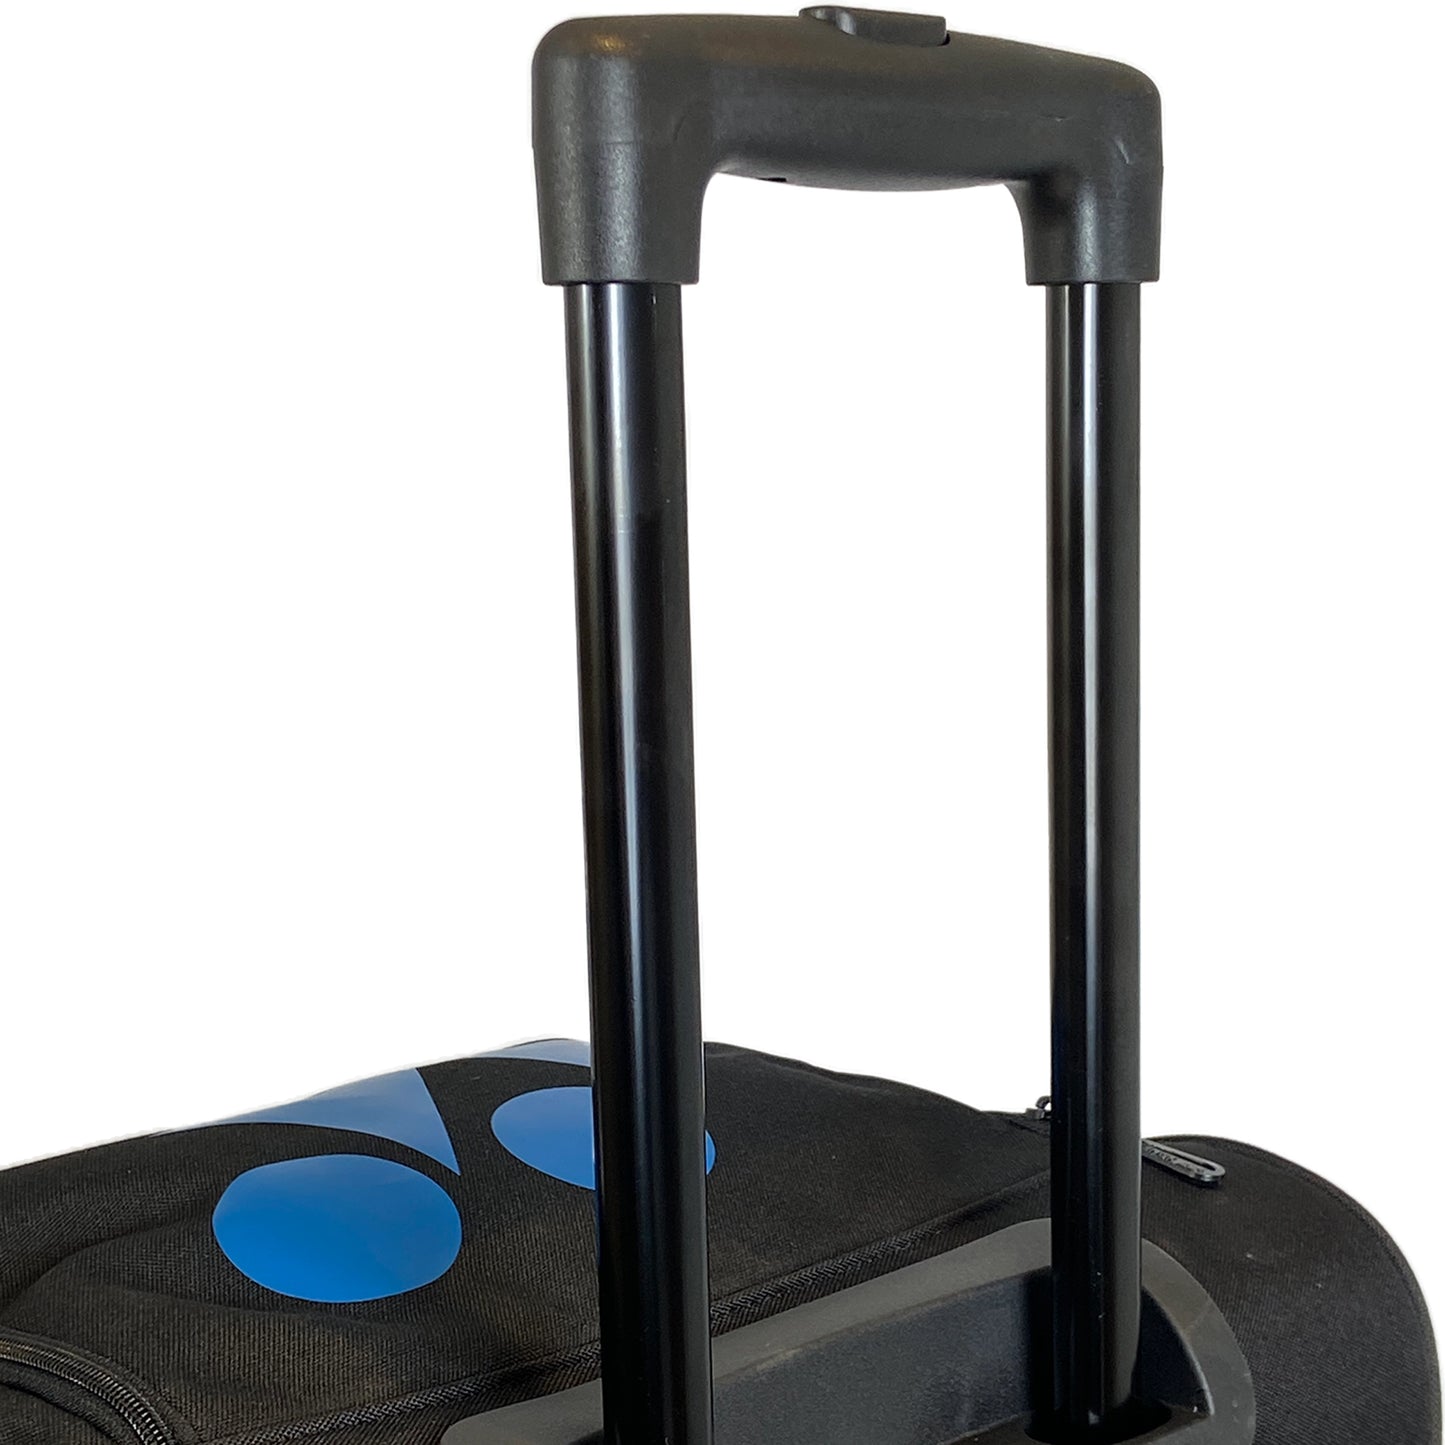 Yonex sac Pro Trolley (BA92232EX) Bleu Fin